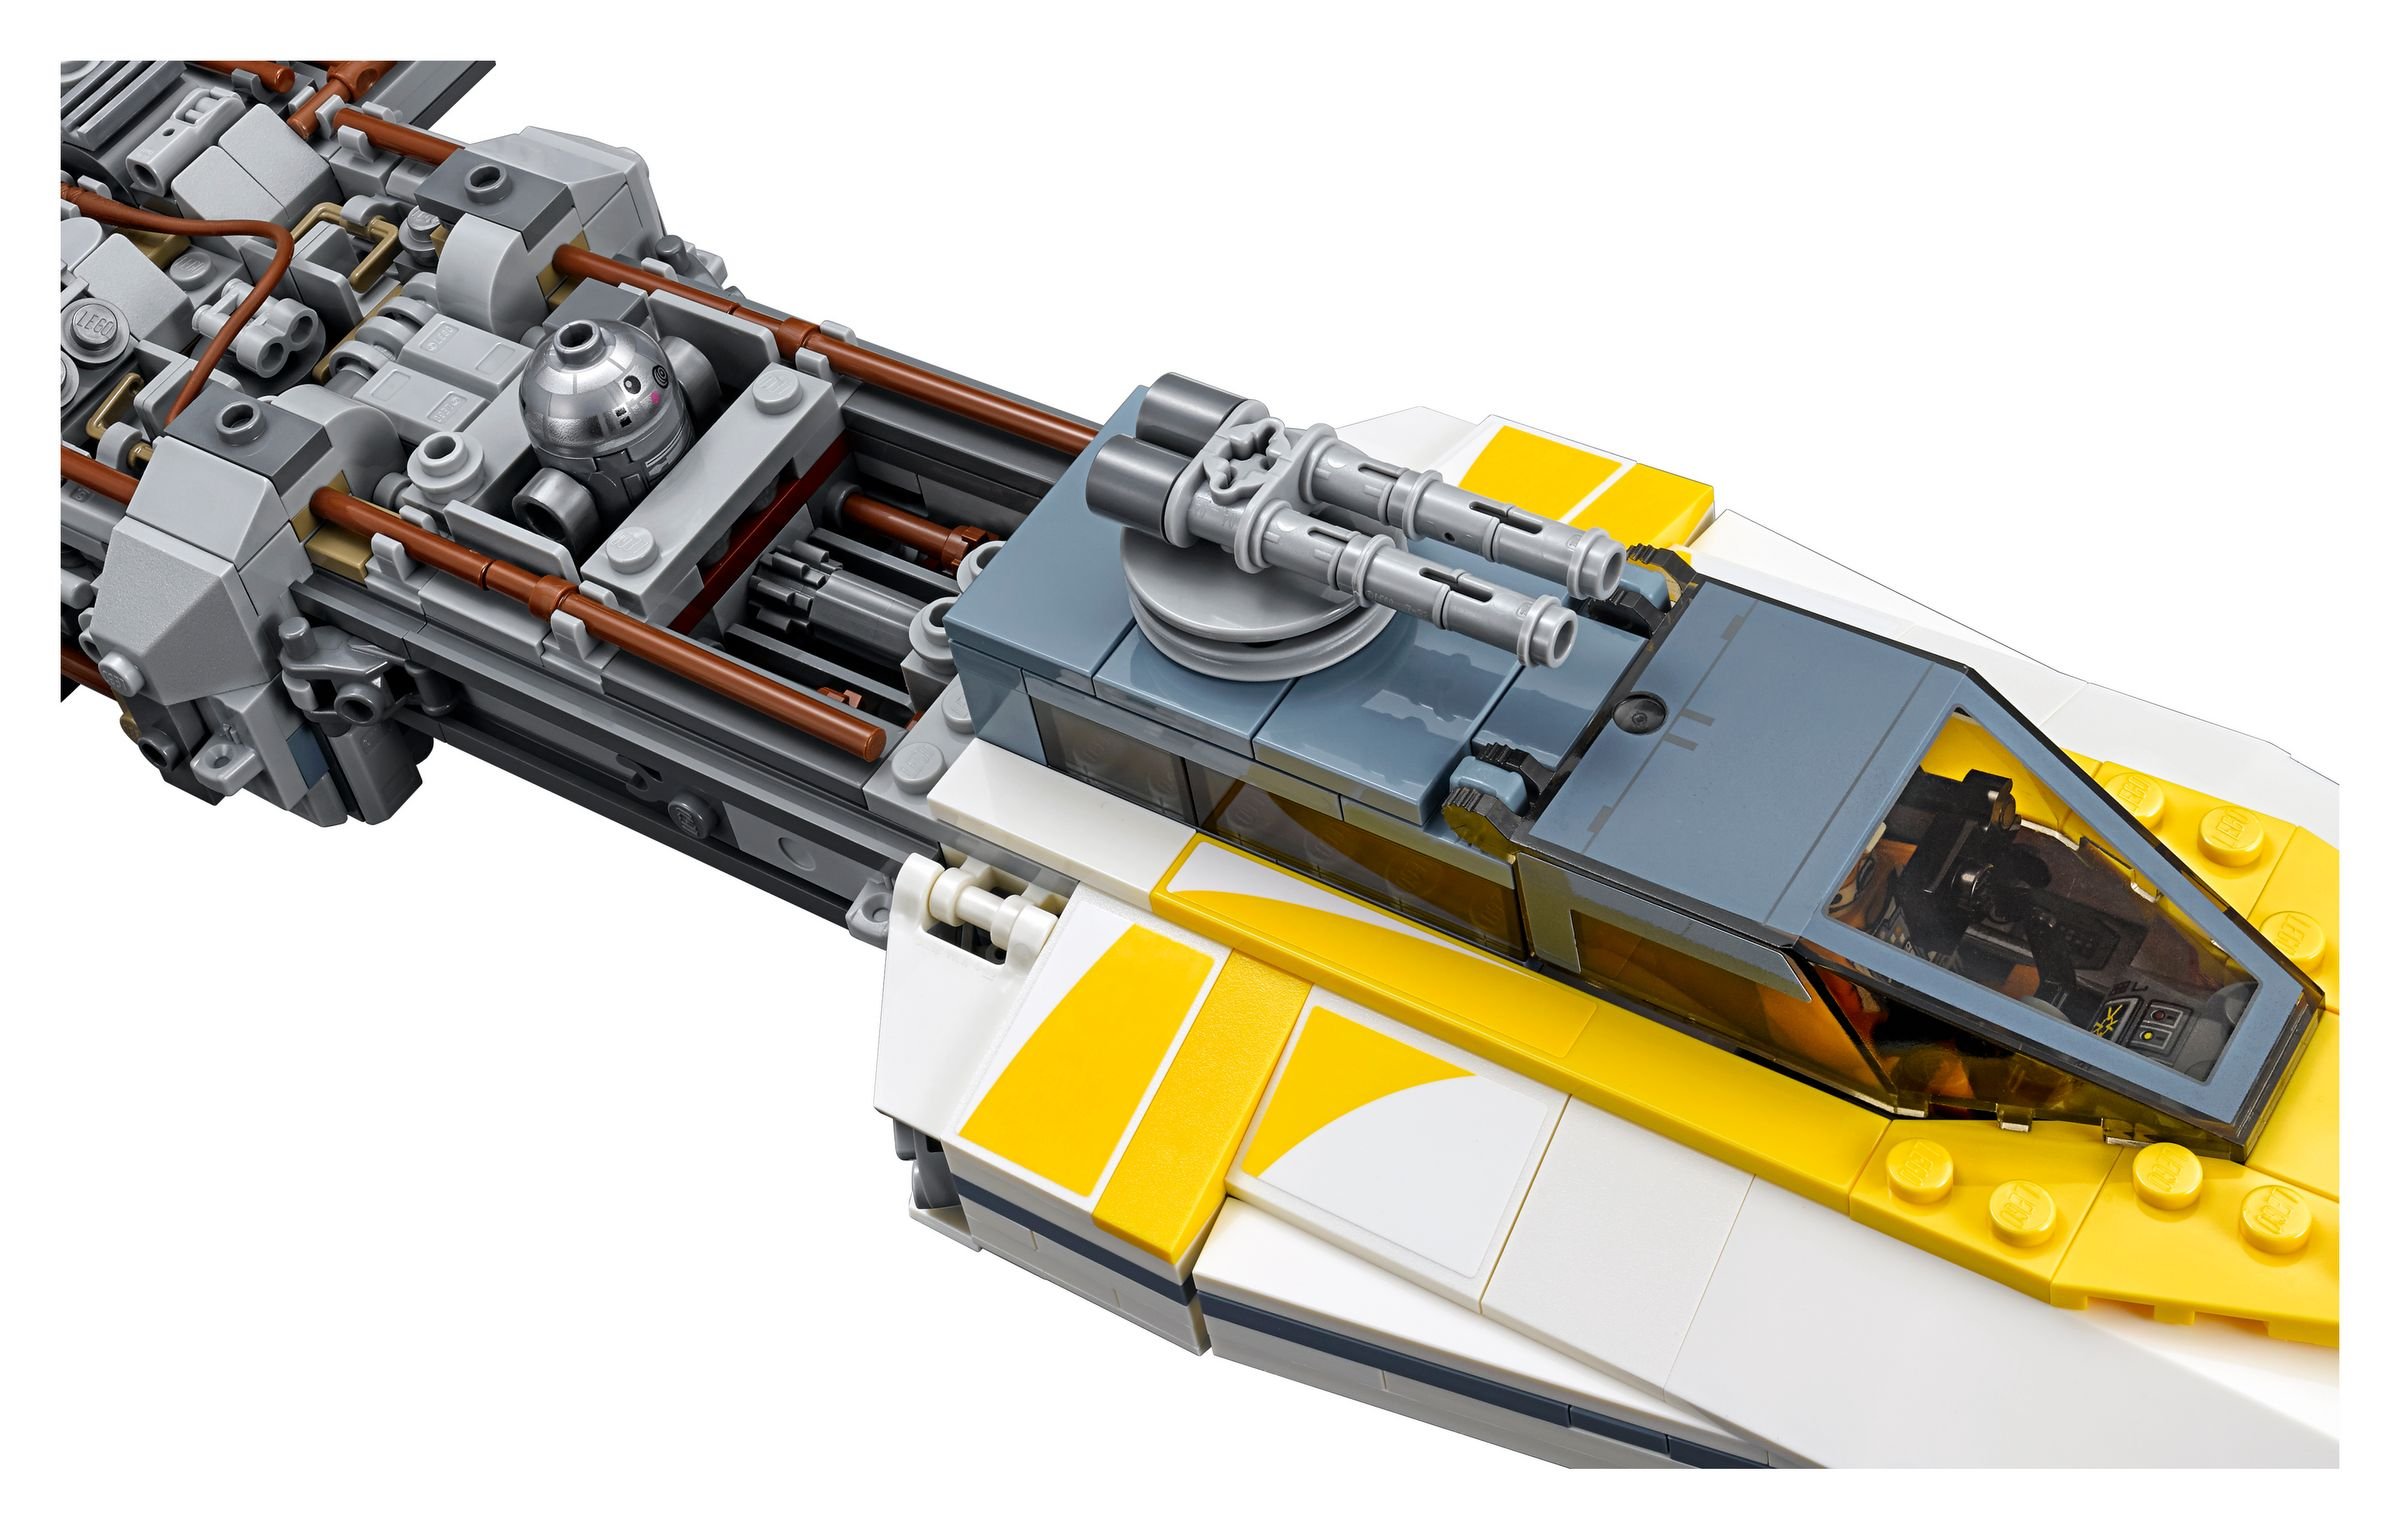 LEGO Star Wars 75181 UCS Y-Wing Starfighter LEGO_75181_alt3.jpg